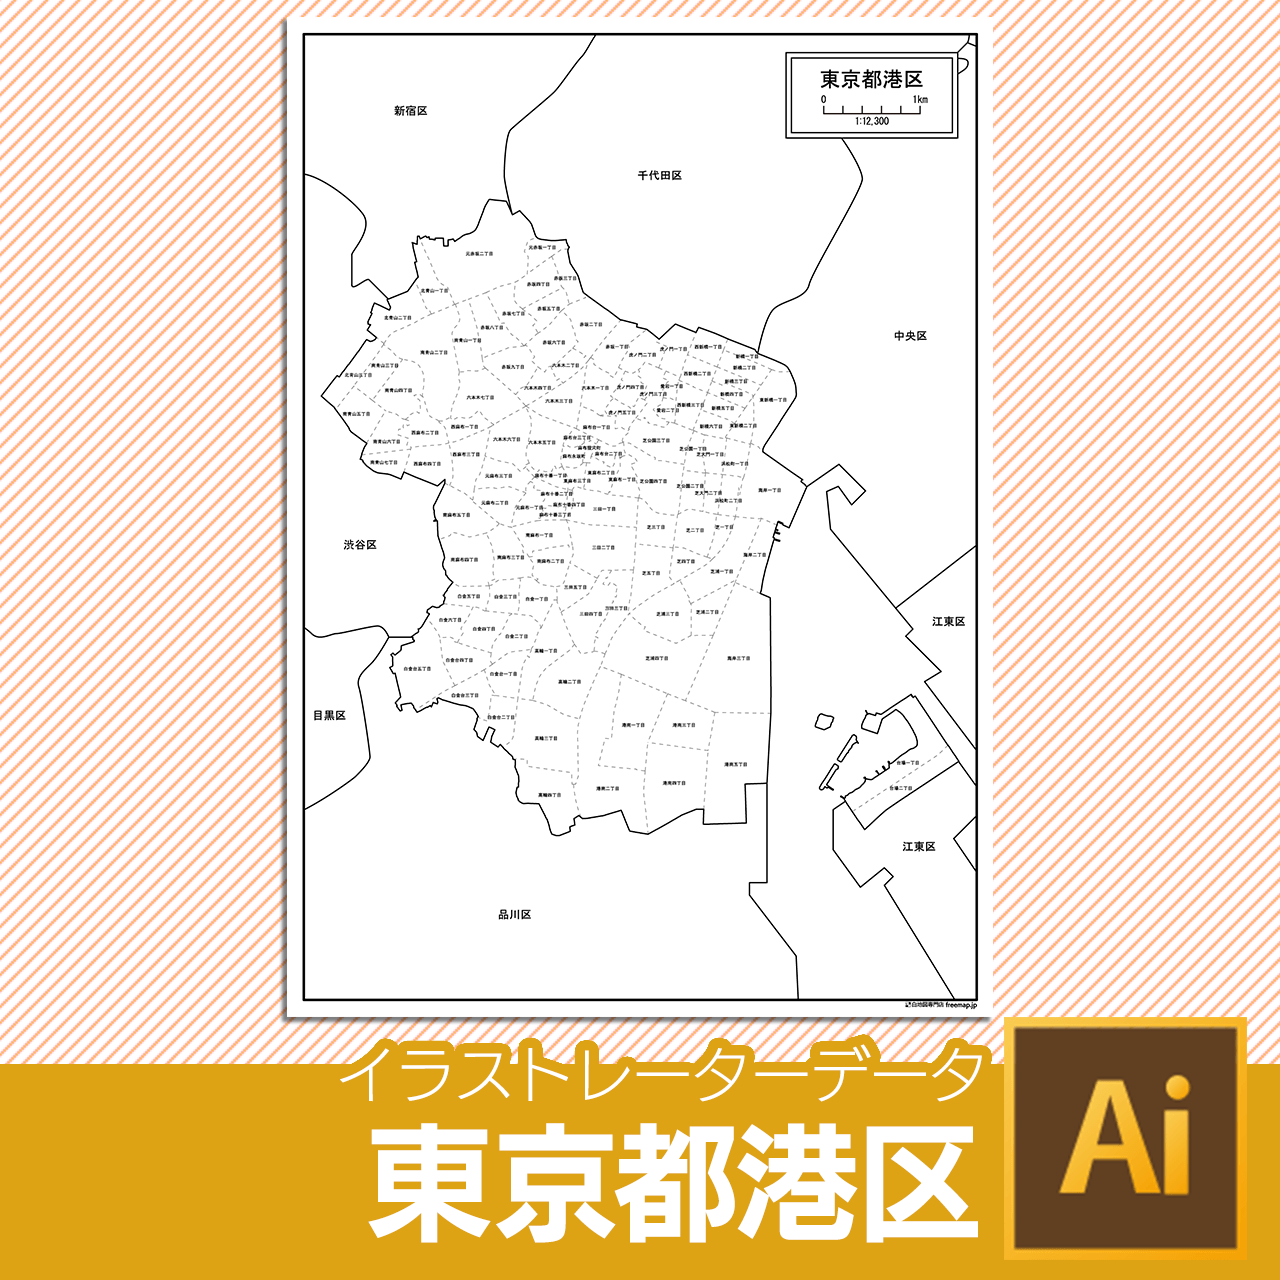 東京都港区のaiデータのサムネイル画像